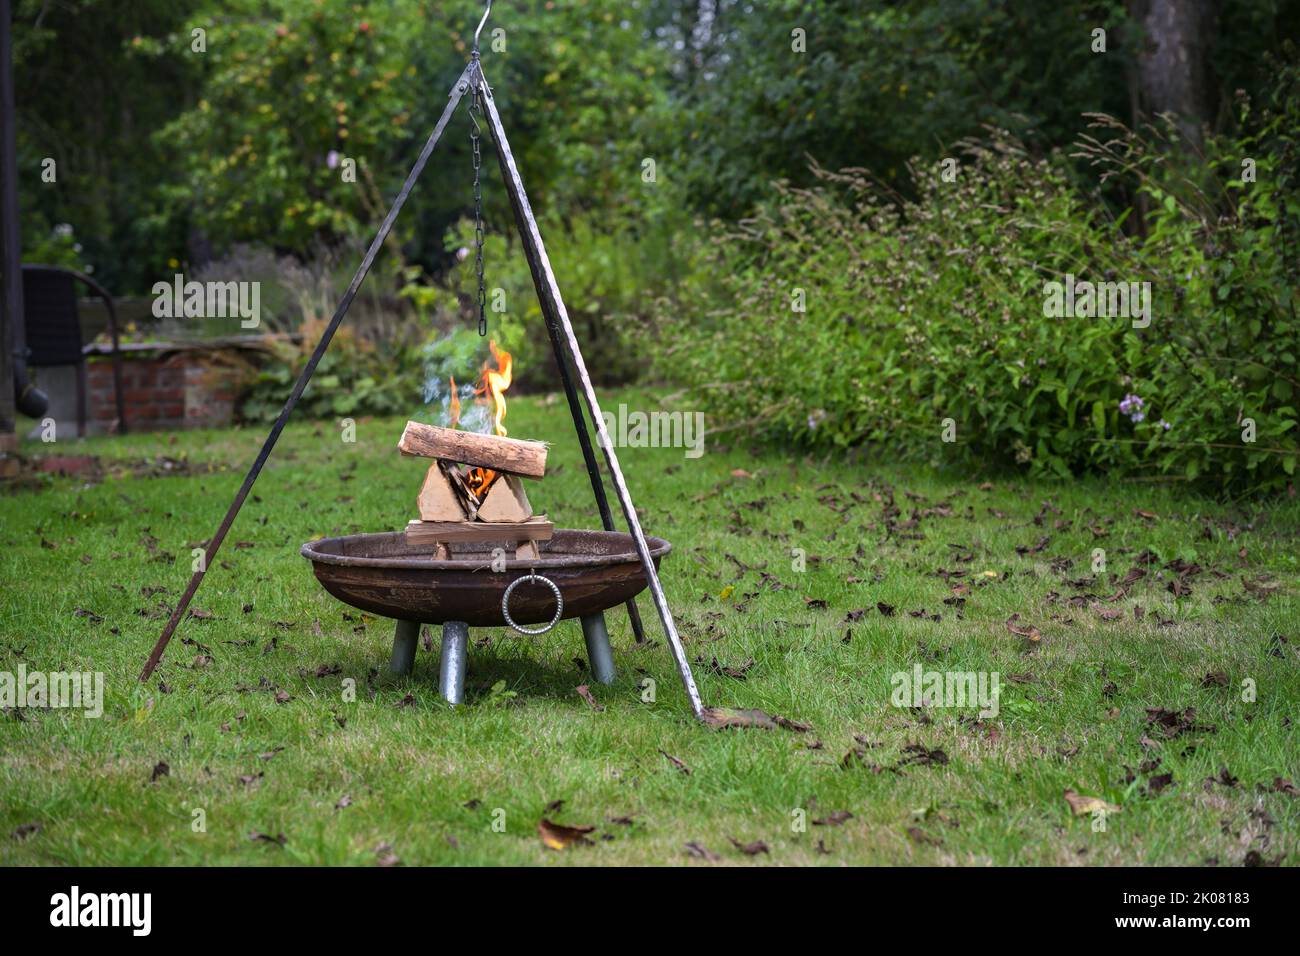 Gestapeltes Brennholz in einer Feuerschale brennt mit Flammen und raucht unter einem Dreibeingrill in einem Garten, Vorbereitung für eine Grillparty, Kopierplatz, ausgewählt Stockfoto